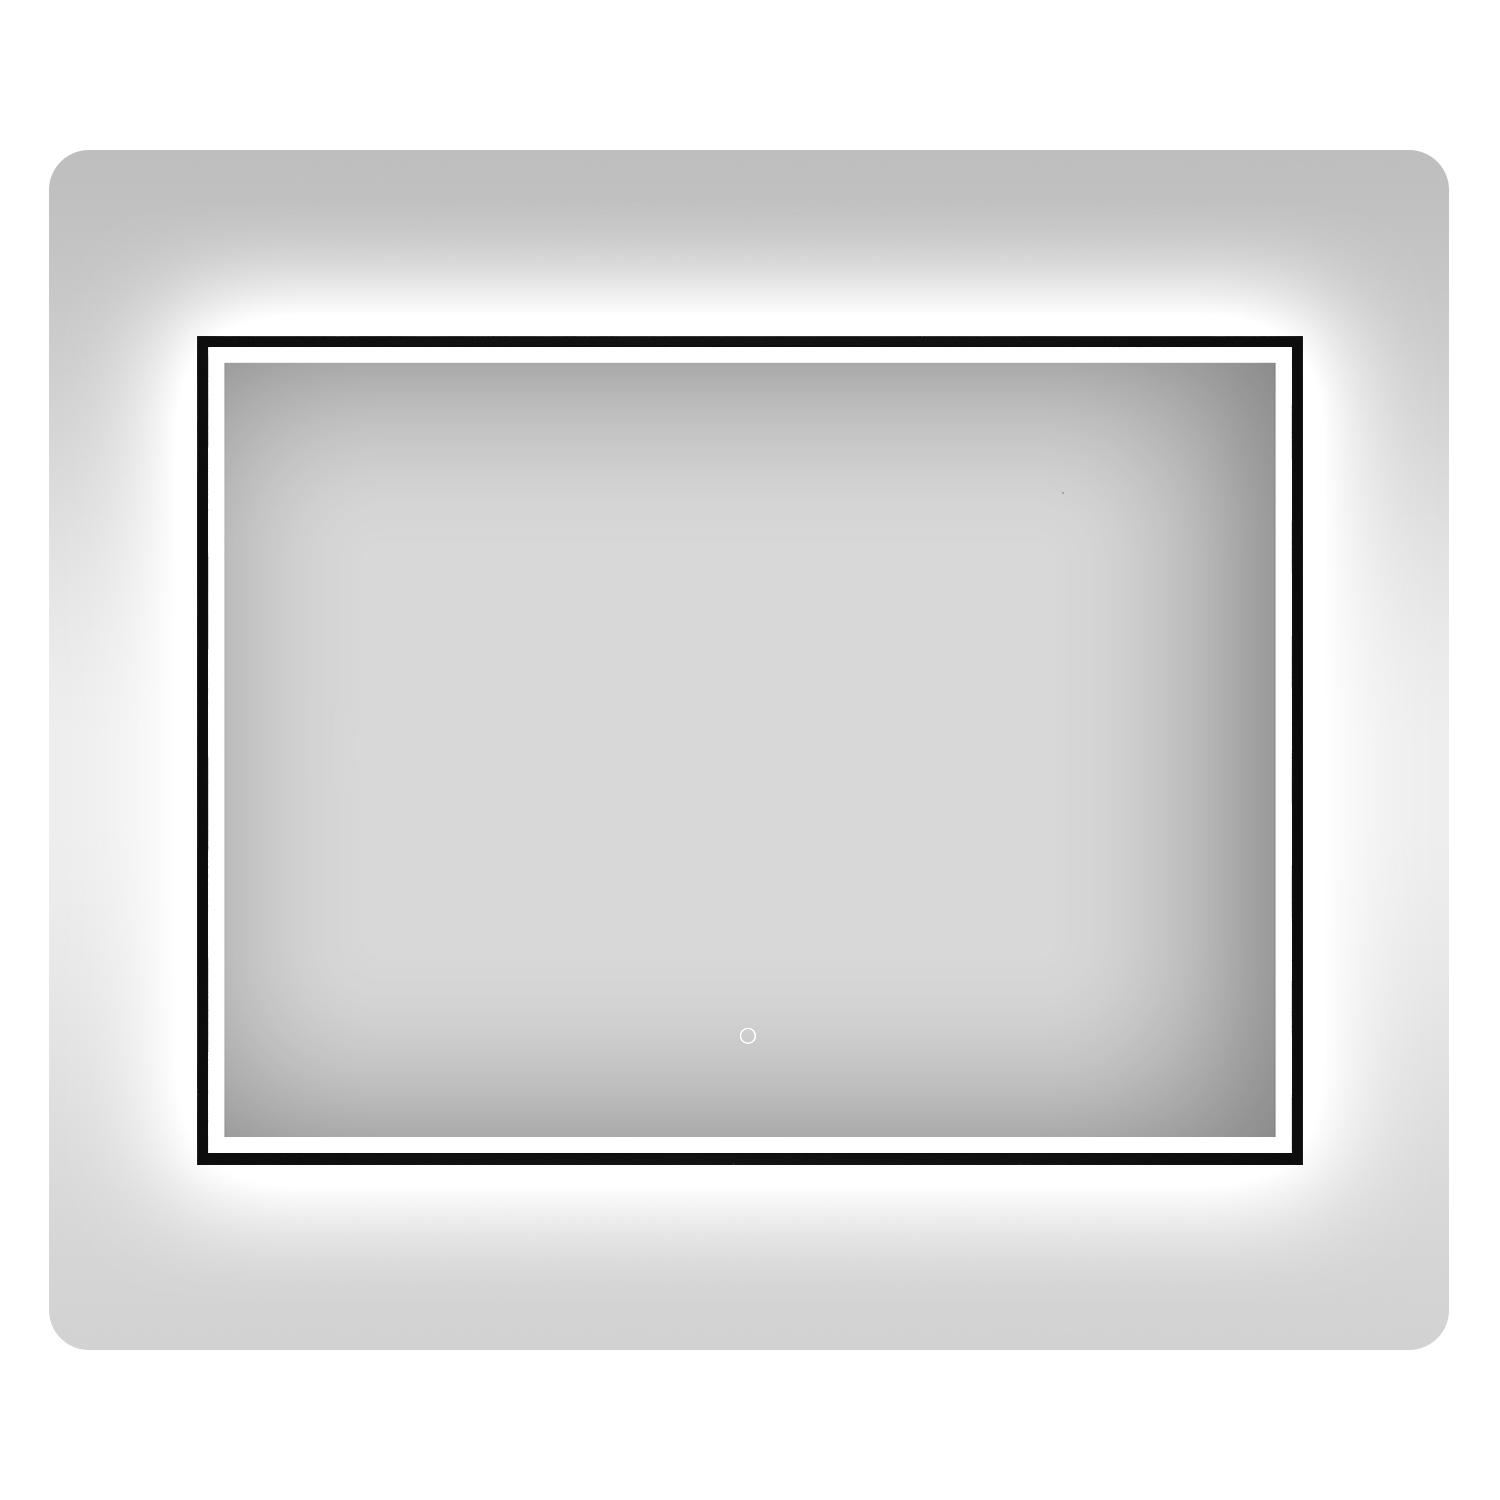 влагостойкое зеркало с подсветкой для ванной wellsee 7 rays spectrum 172201370 120х70 см Влагостойкое зеркало с подсветкой для ванной Wellsee 7 Rays' Spectrum 172201370, 120х70 см